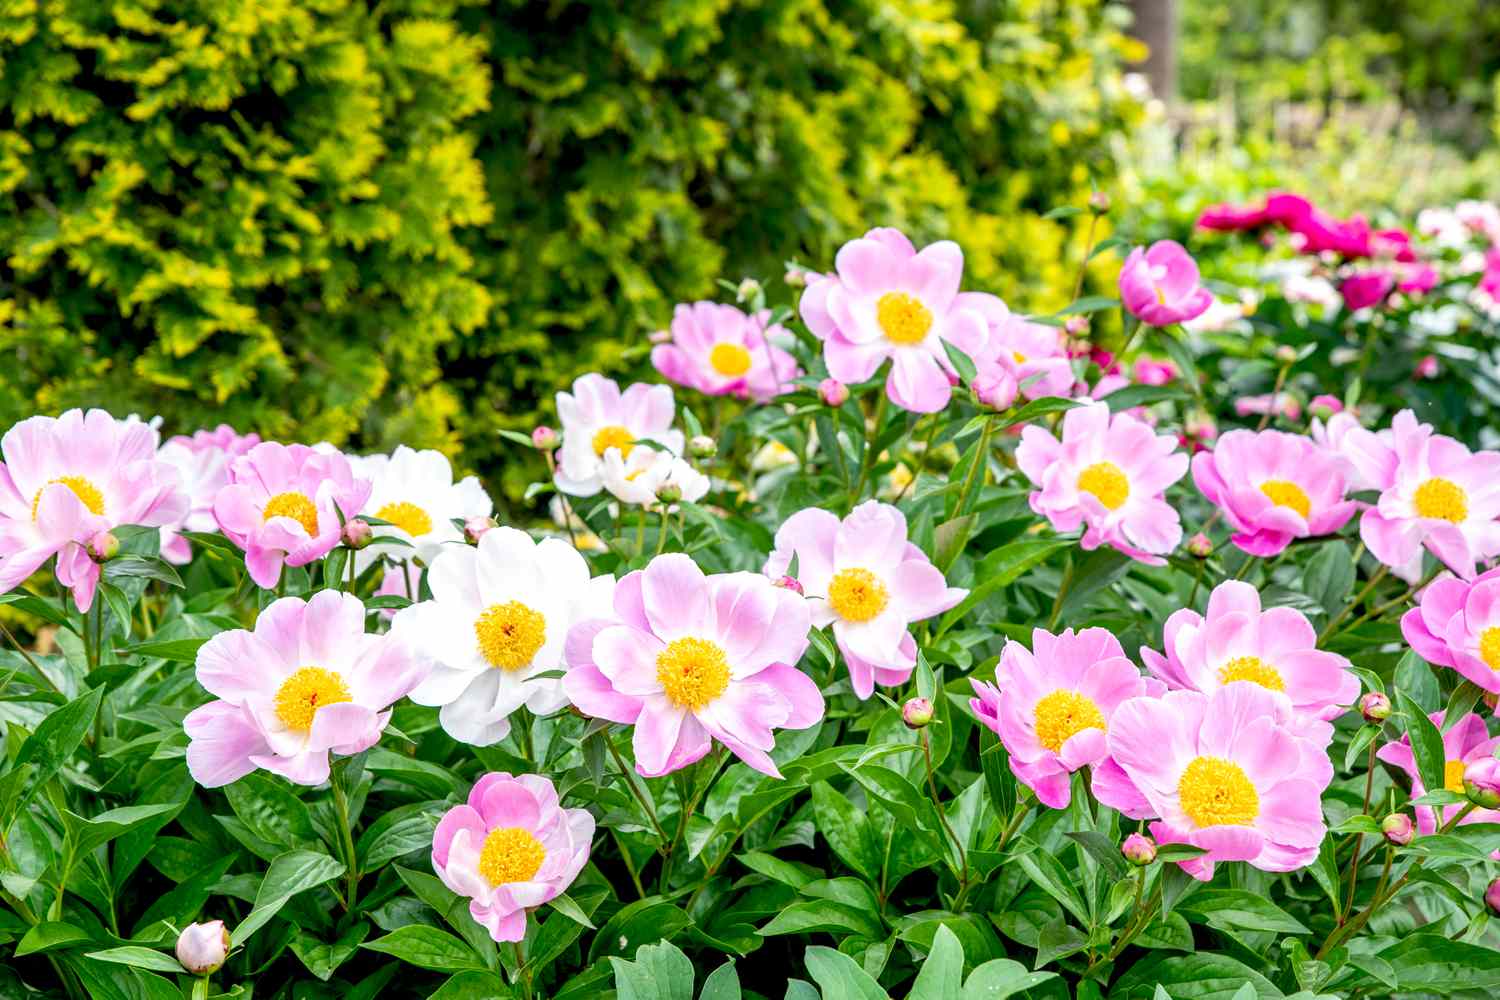 Flores de peonía con pétalos rosa claro y blanco rodeando centros amarillos en el jardín